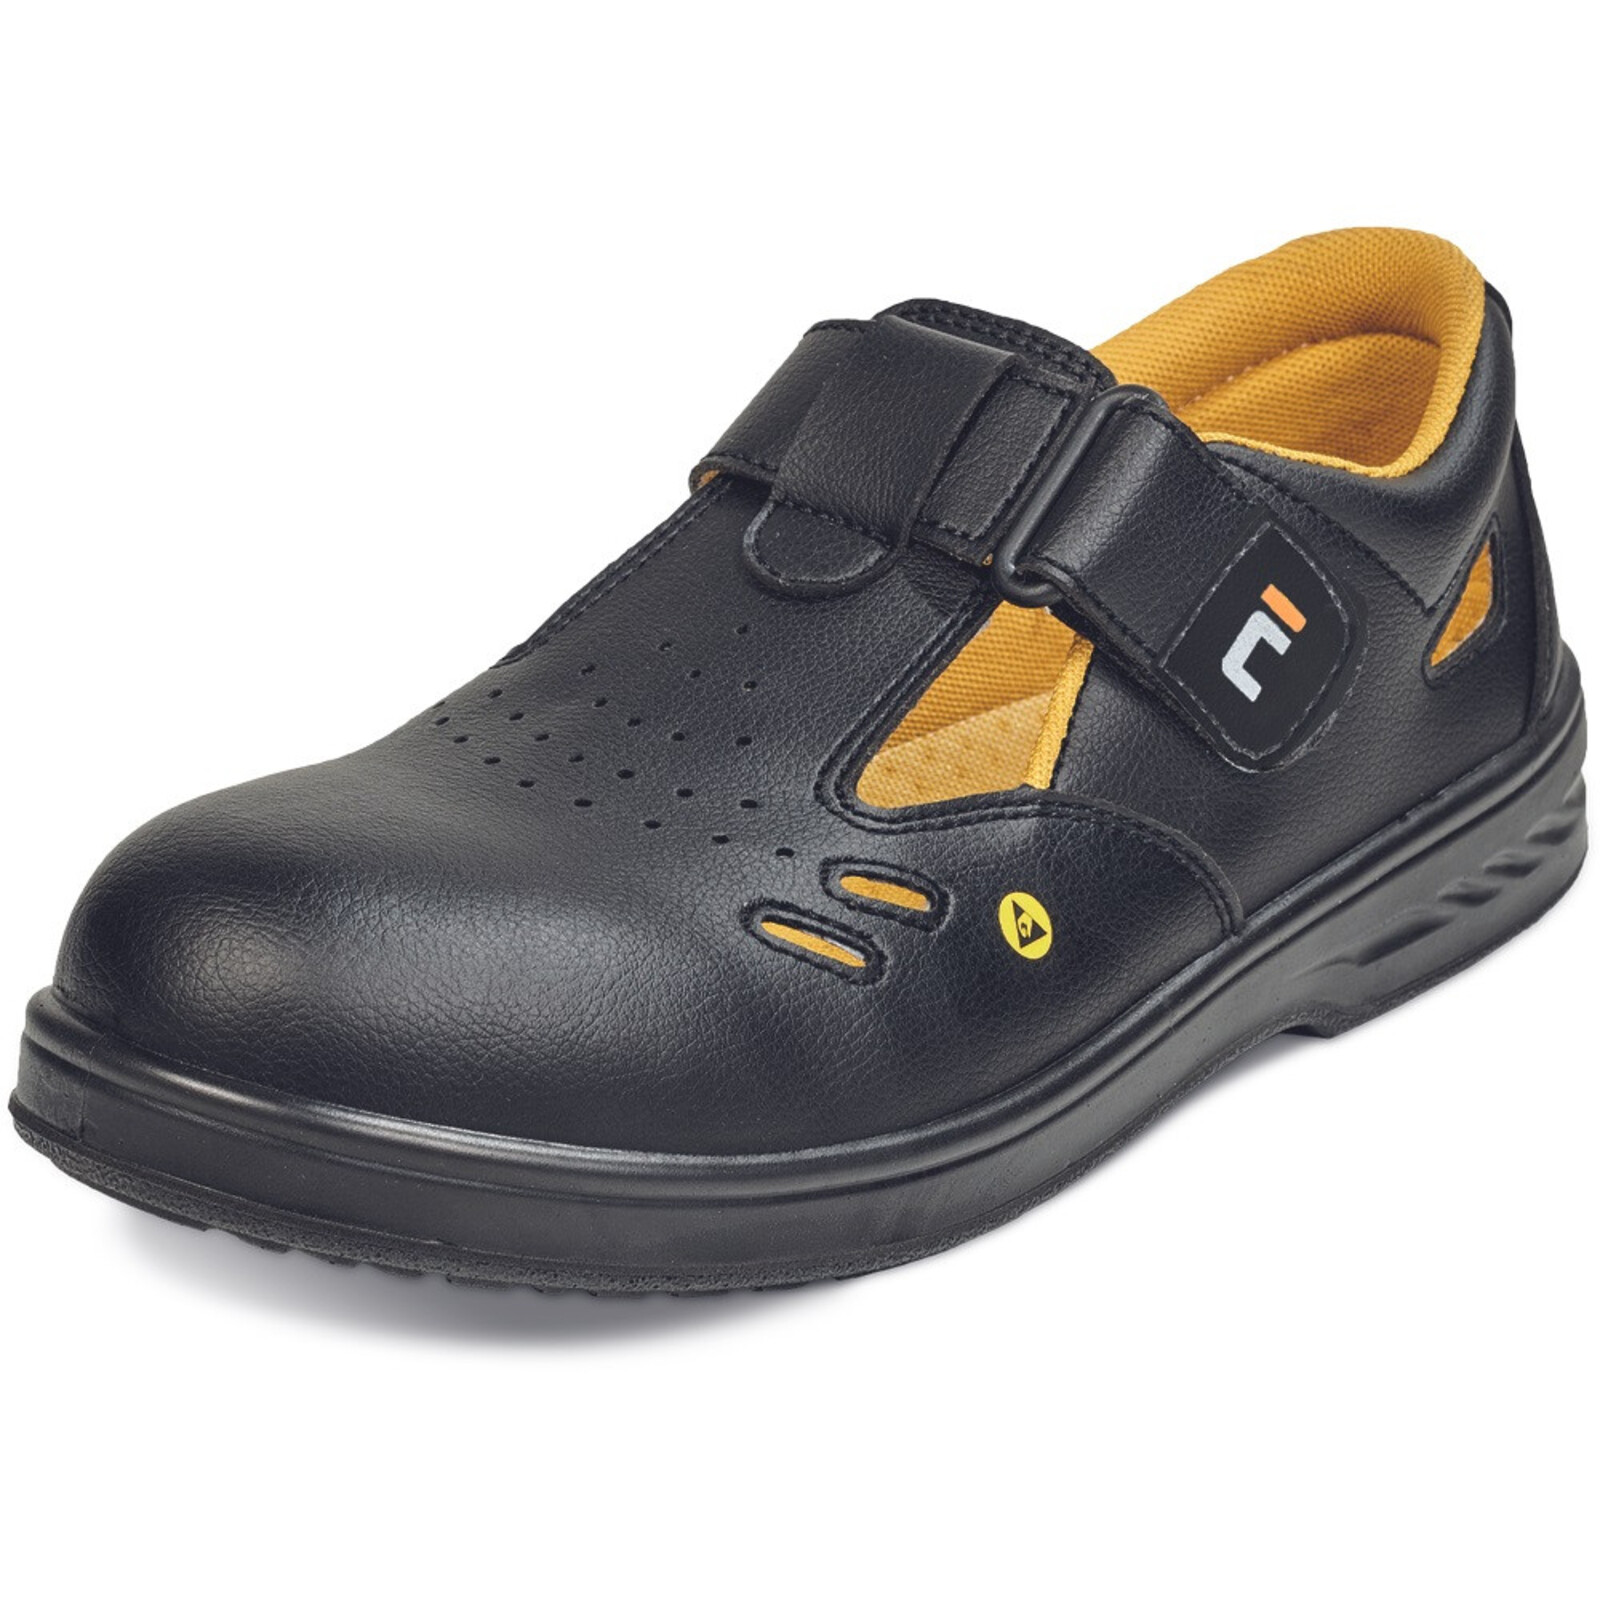 Bezpečnostné sandále Raven MF ESD S1 SRC - veľkosť: 37, farba: čierna